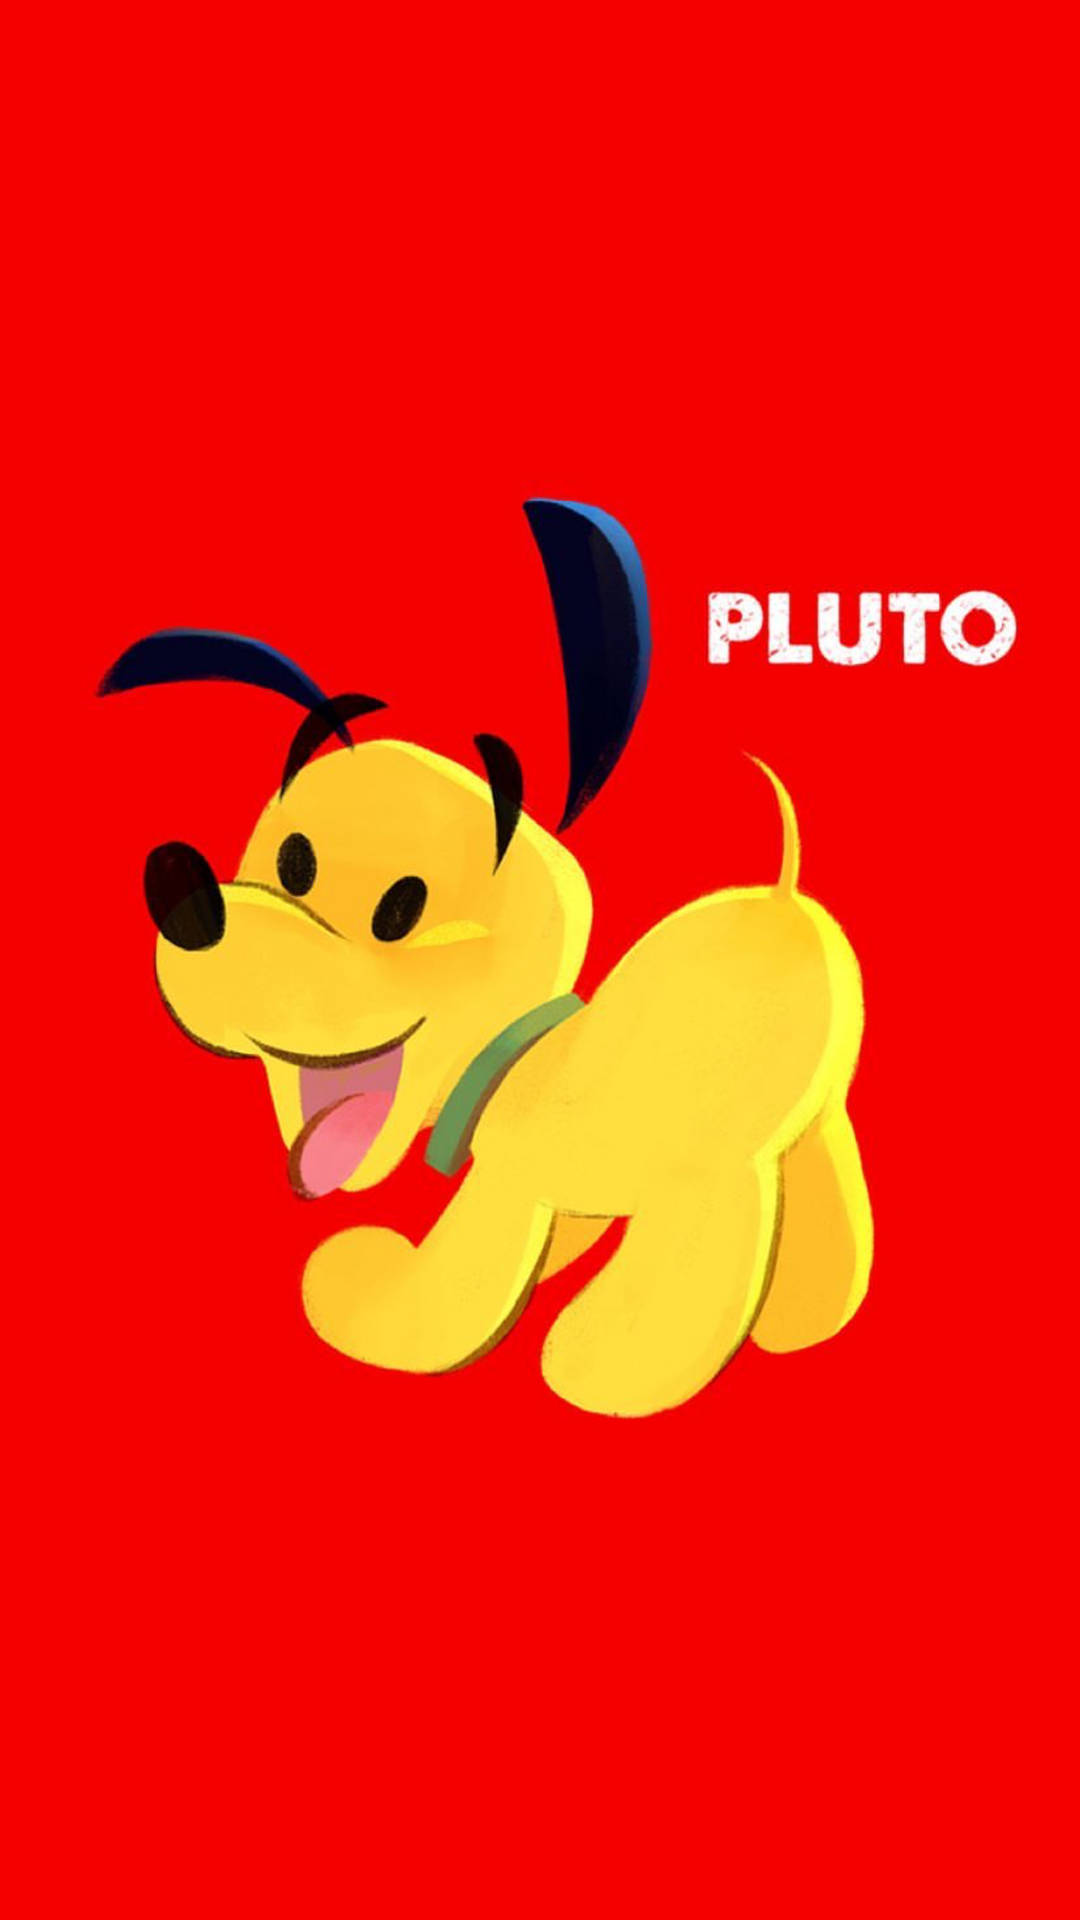 Disneypluto Fan Art - Disney Pluto Fan Art Wallpaper